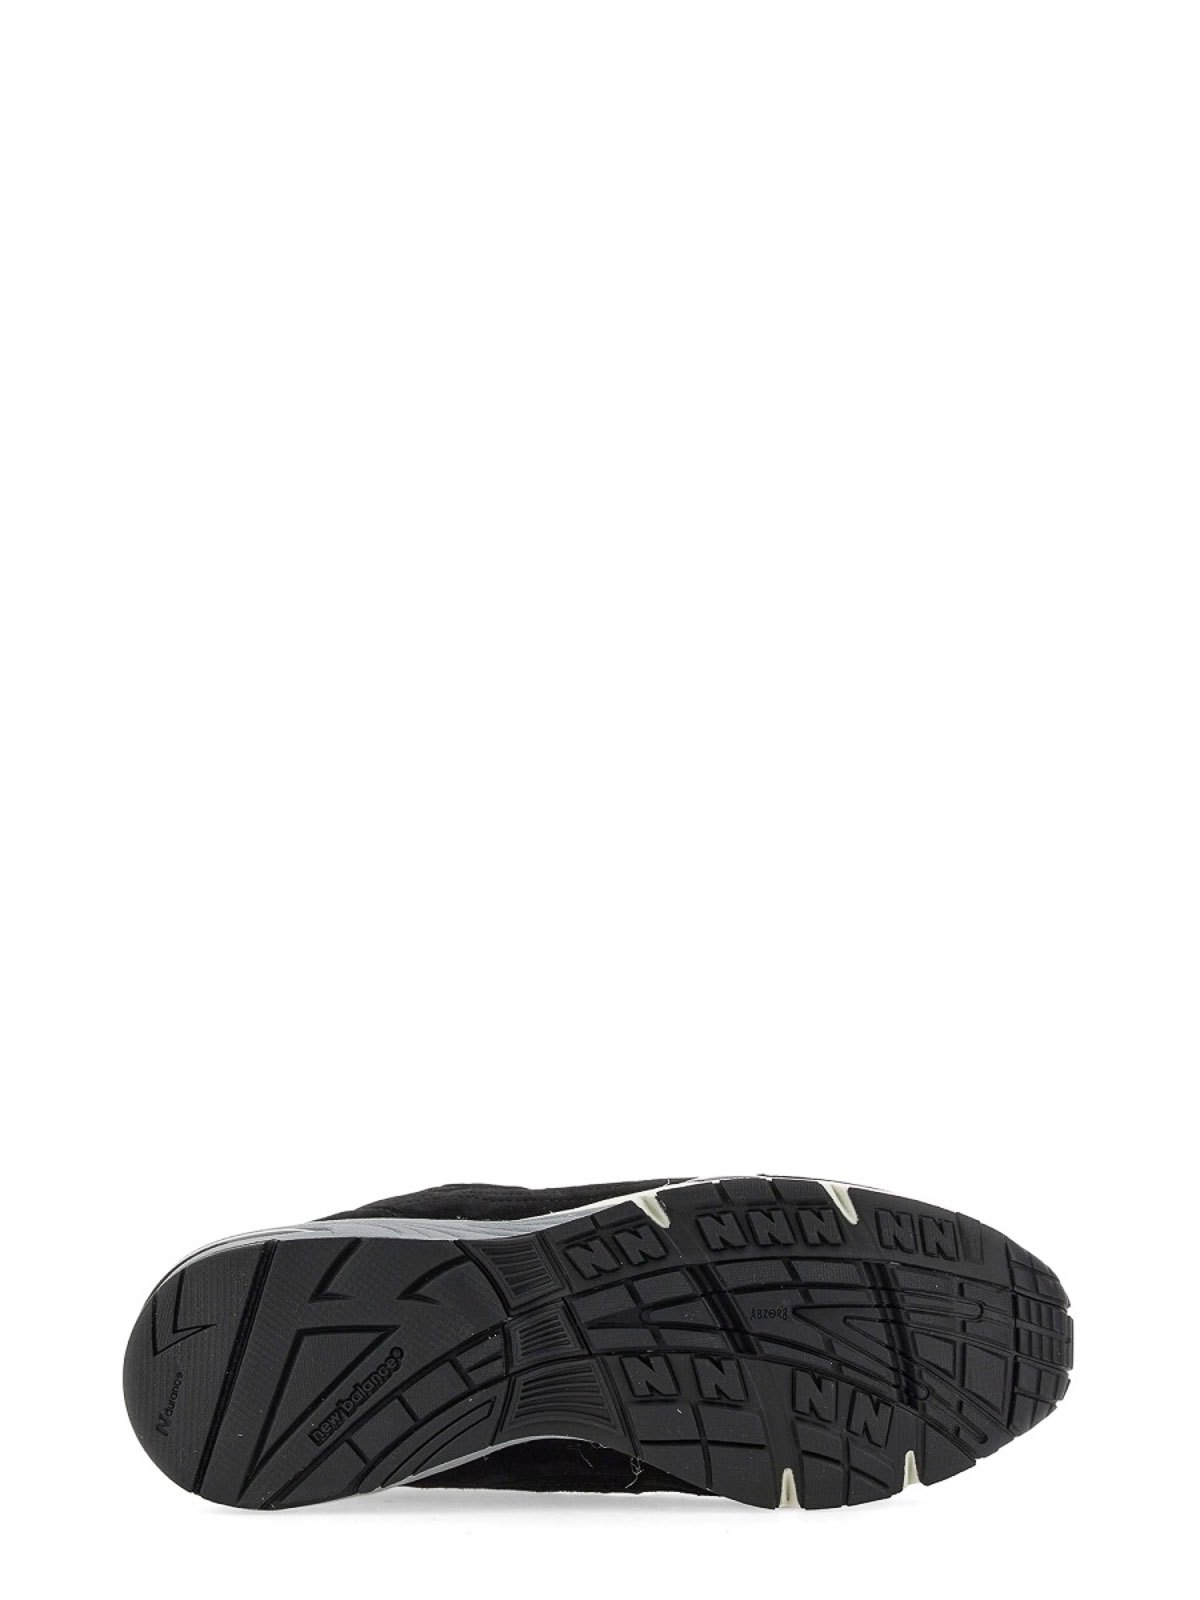 Shop New Balance Zapatillas - 991 In Black